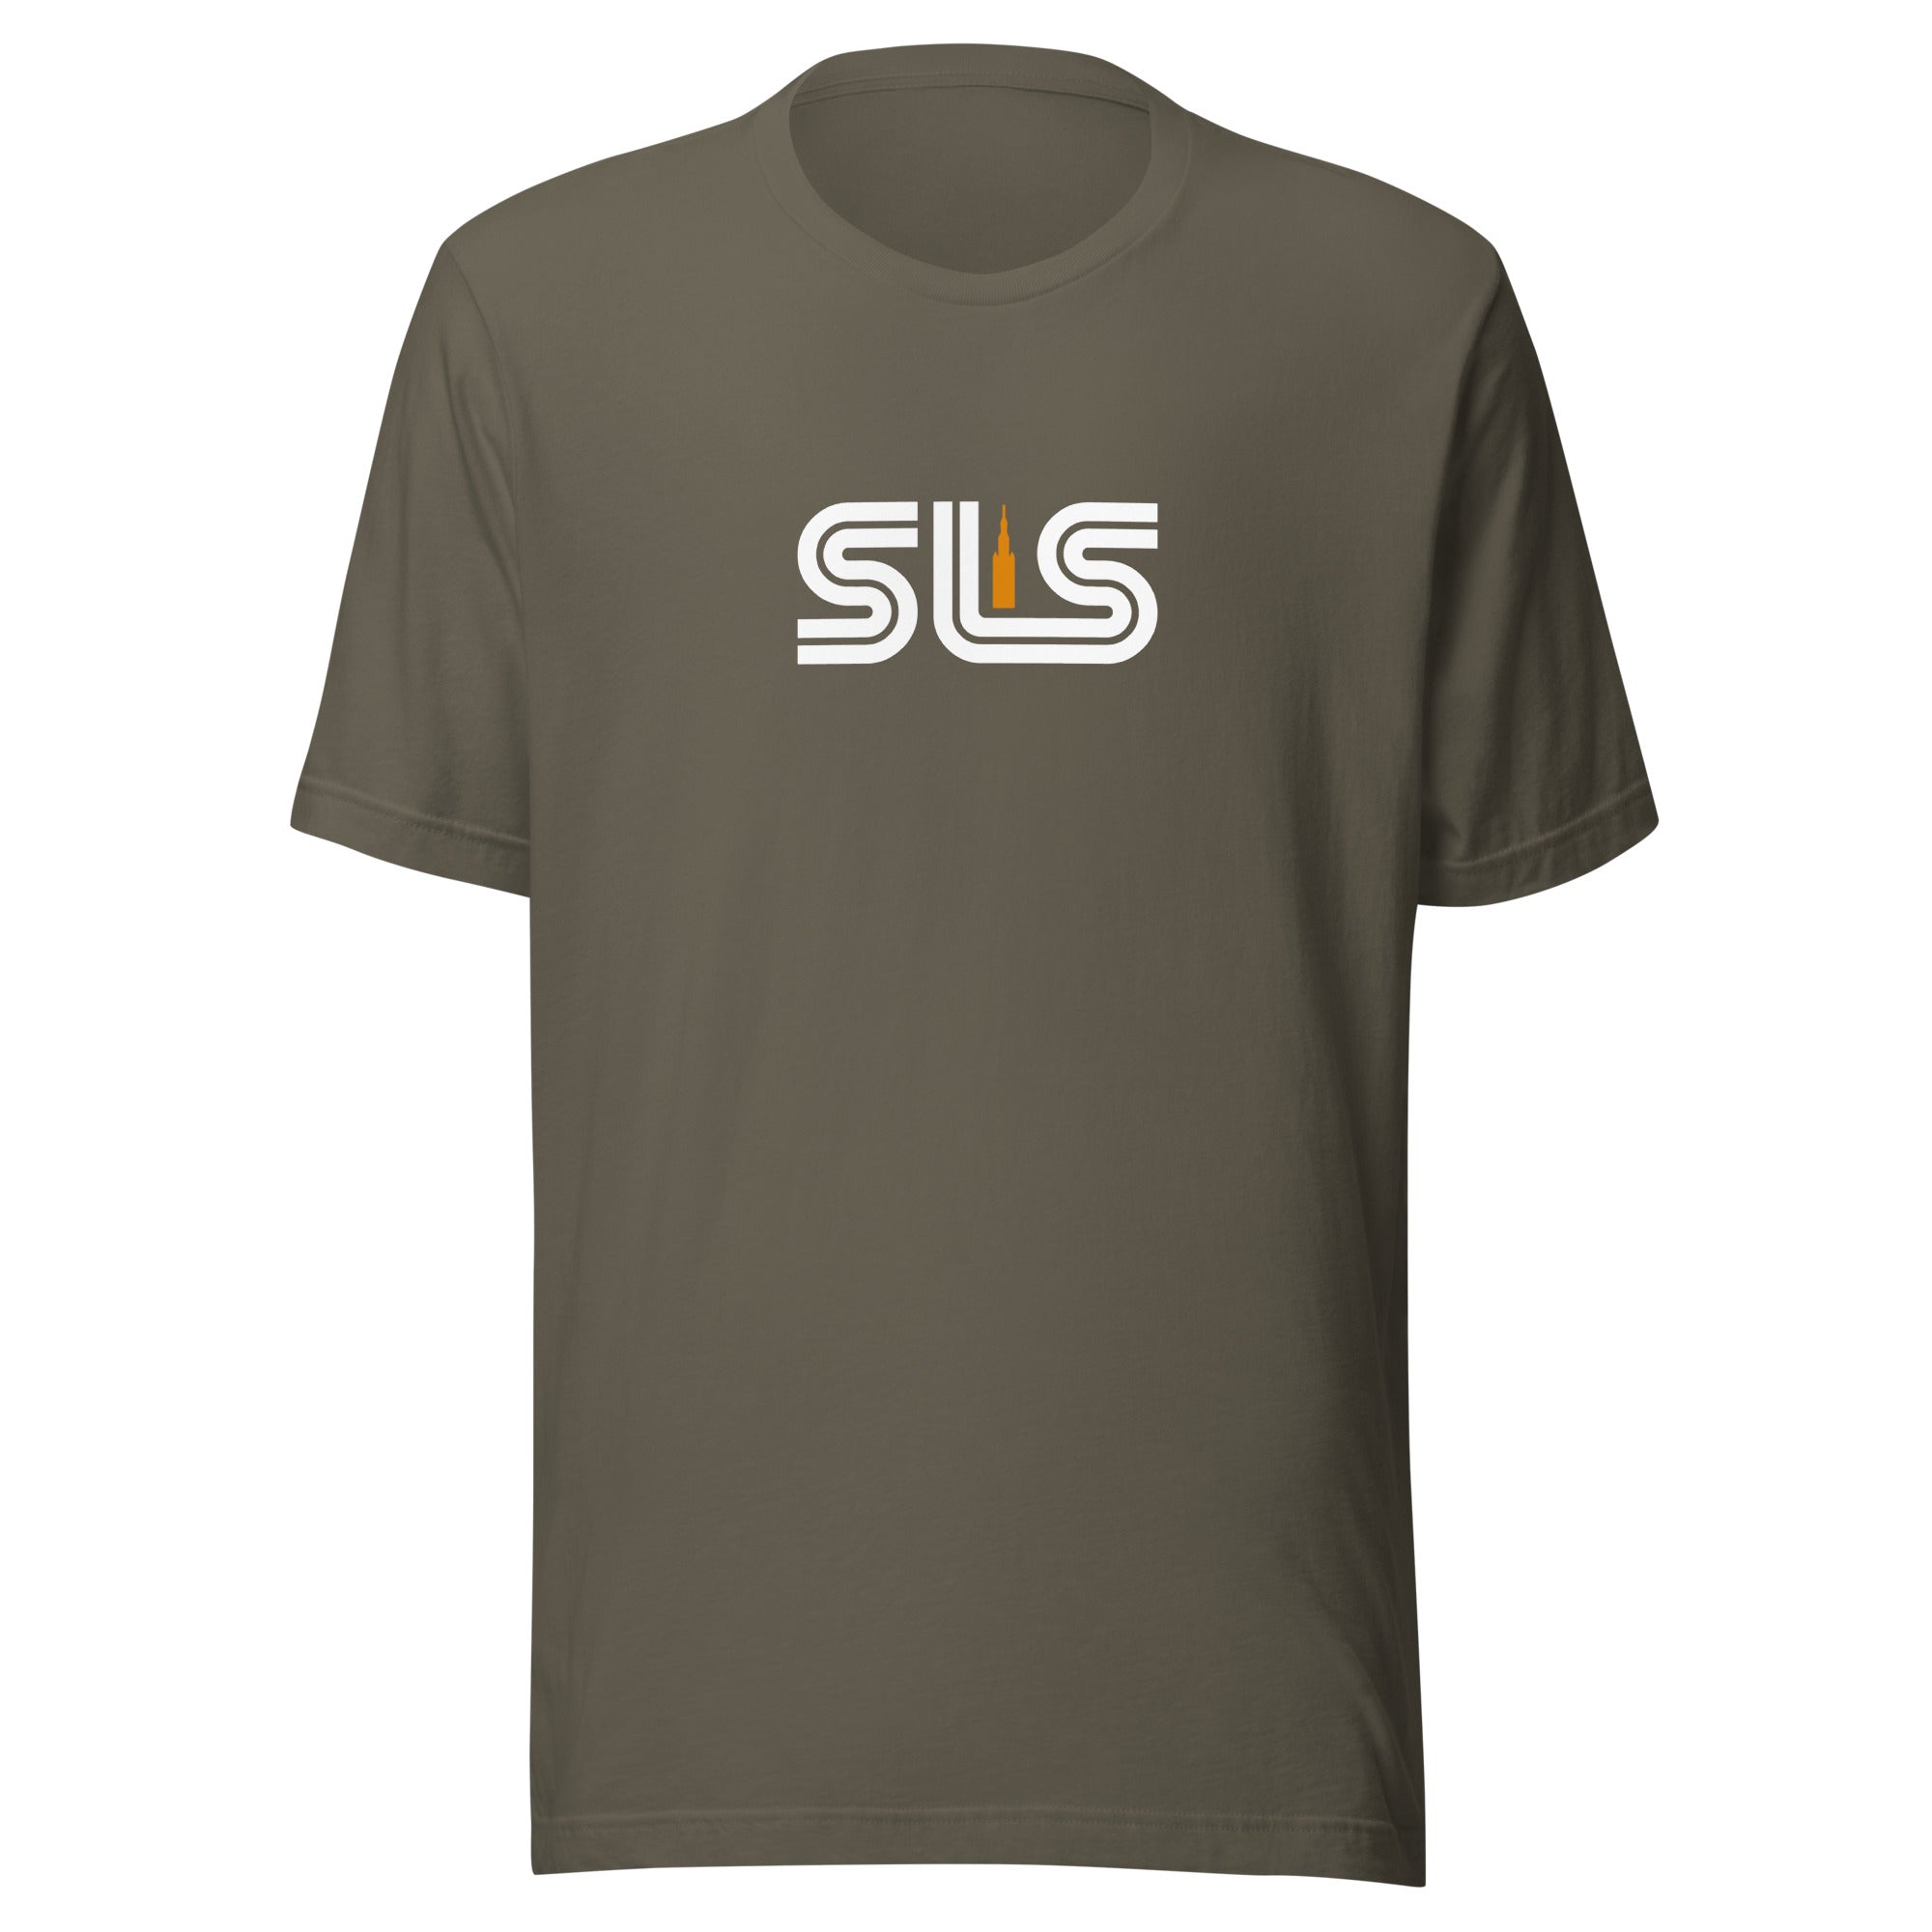 SLS - Unisex T-shirt